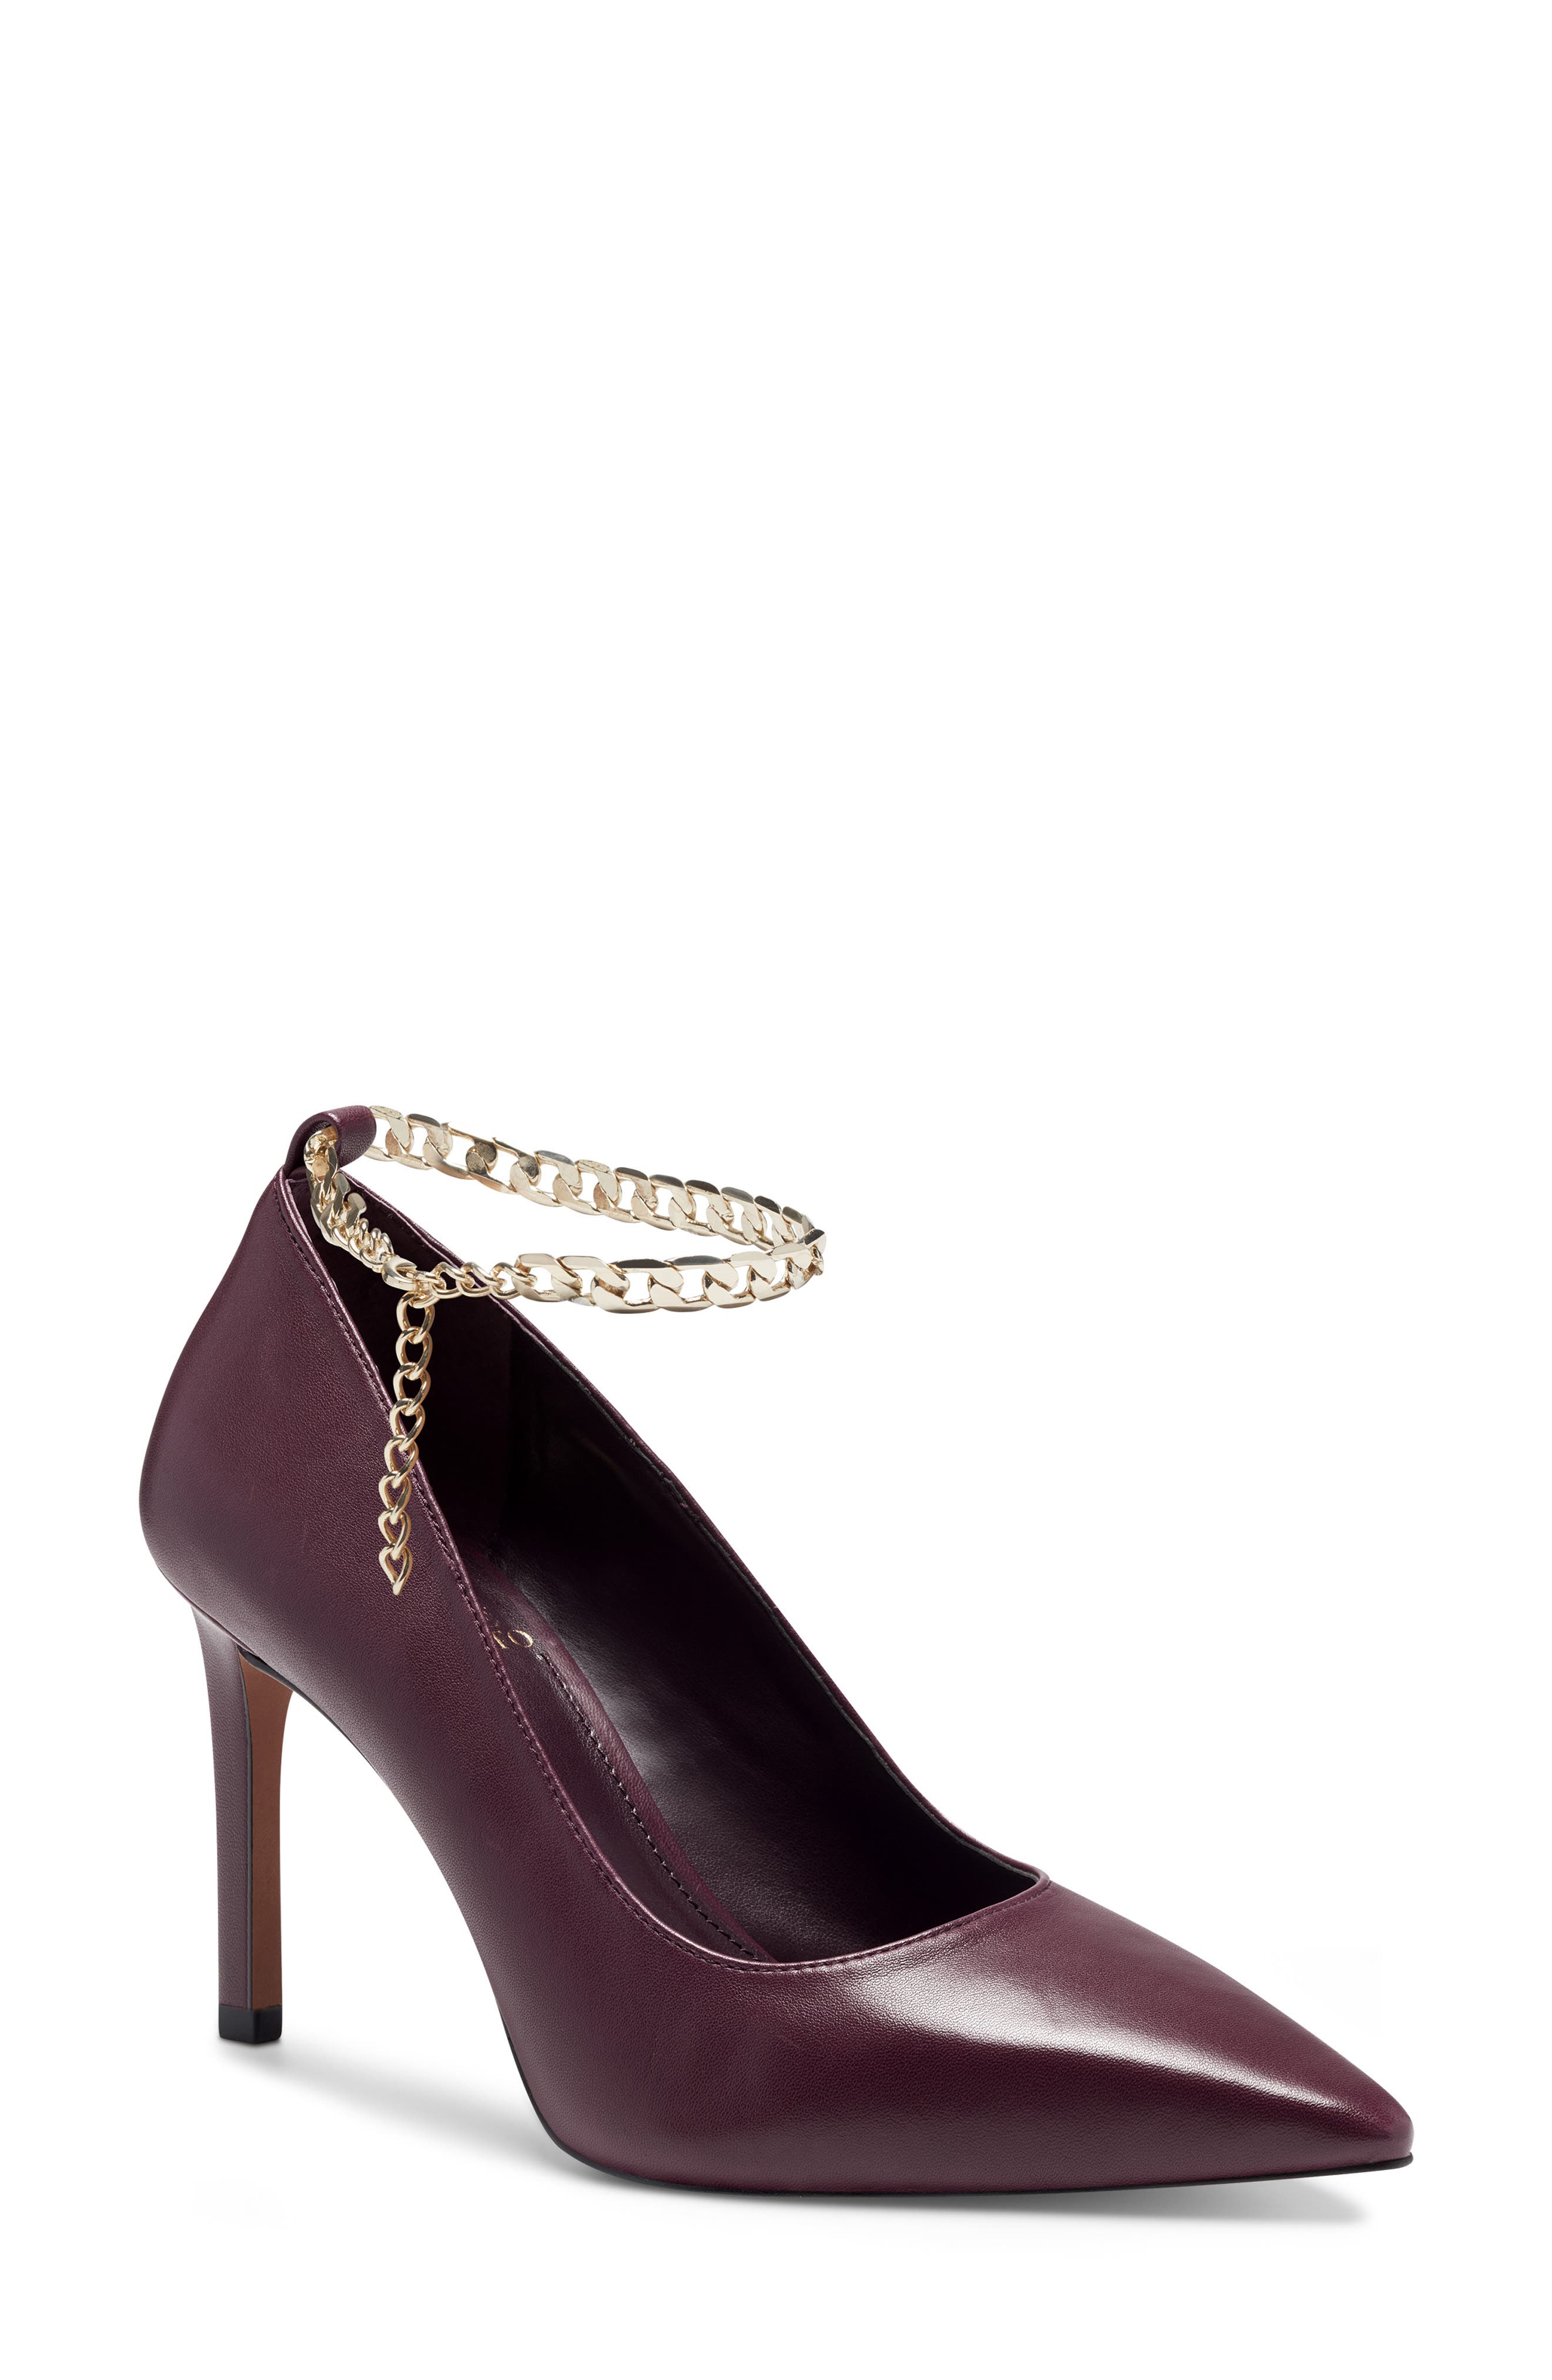 dark purple heels women's shoes